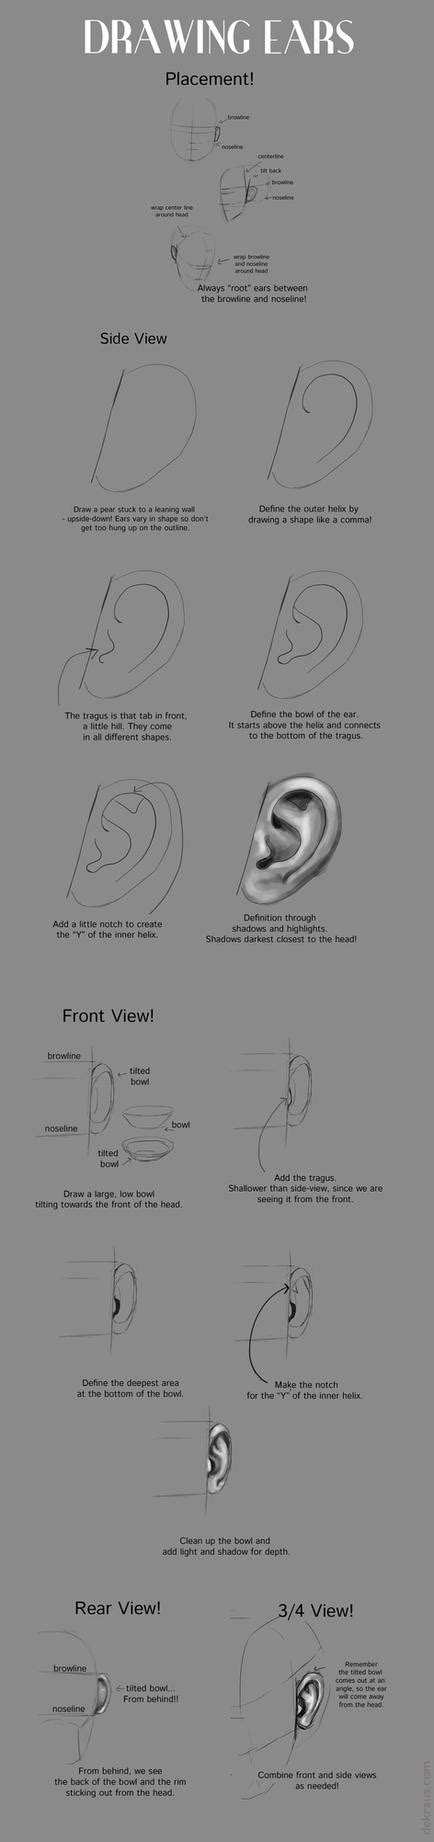 Drawing Ears Tutorial By Banjodi On Deviantart